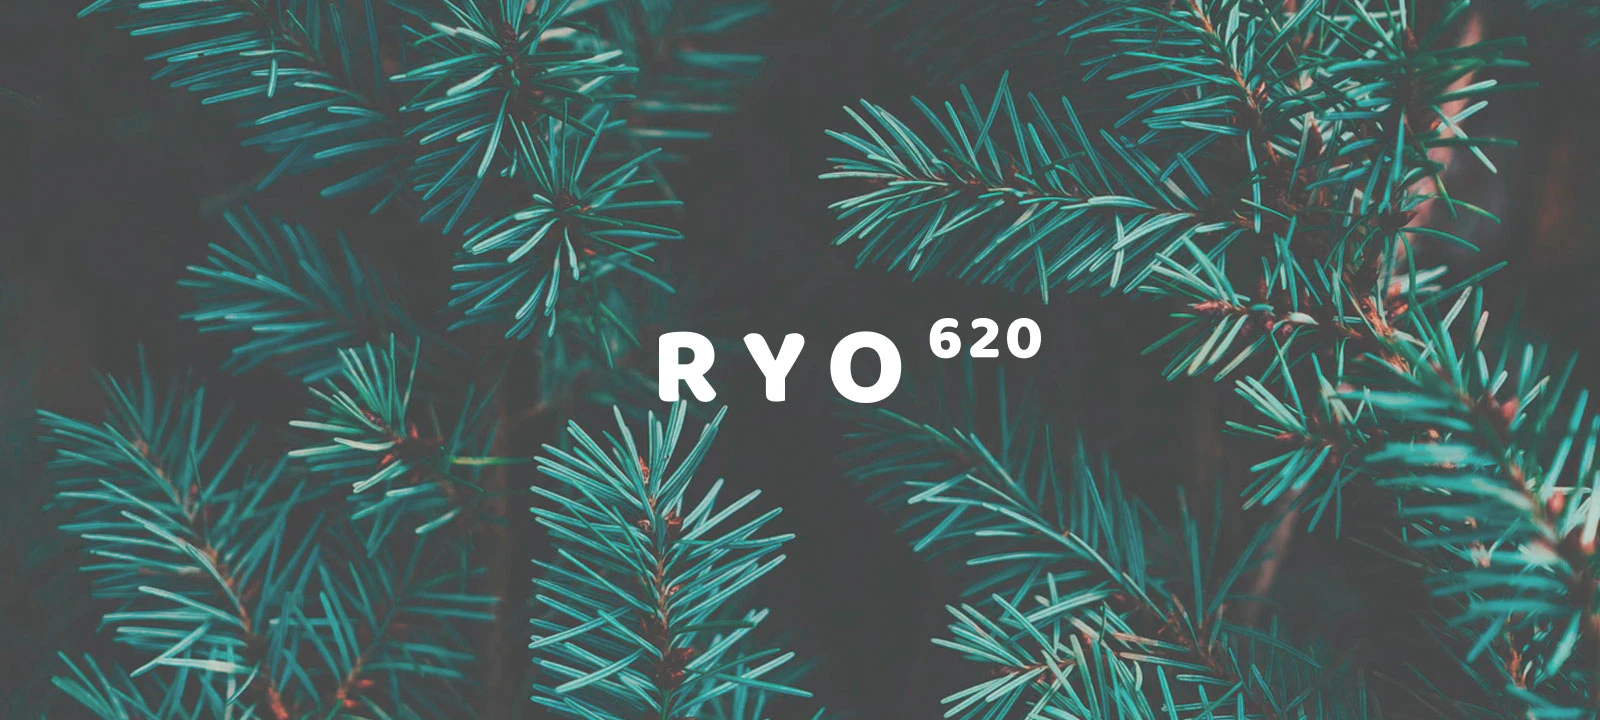 RYO620をリニューアル